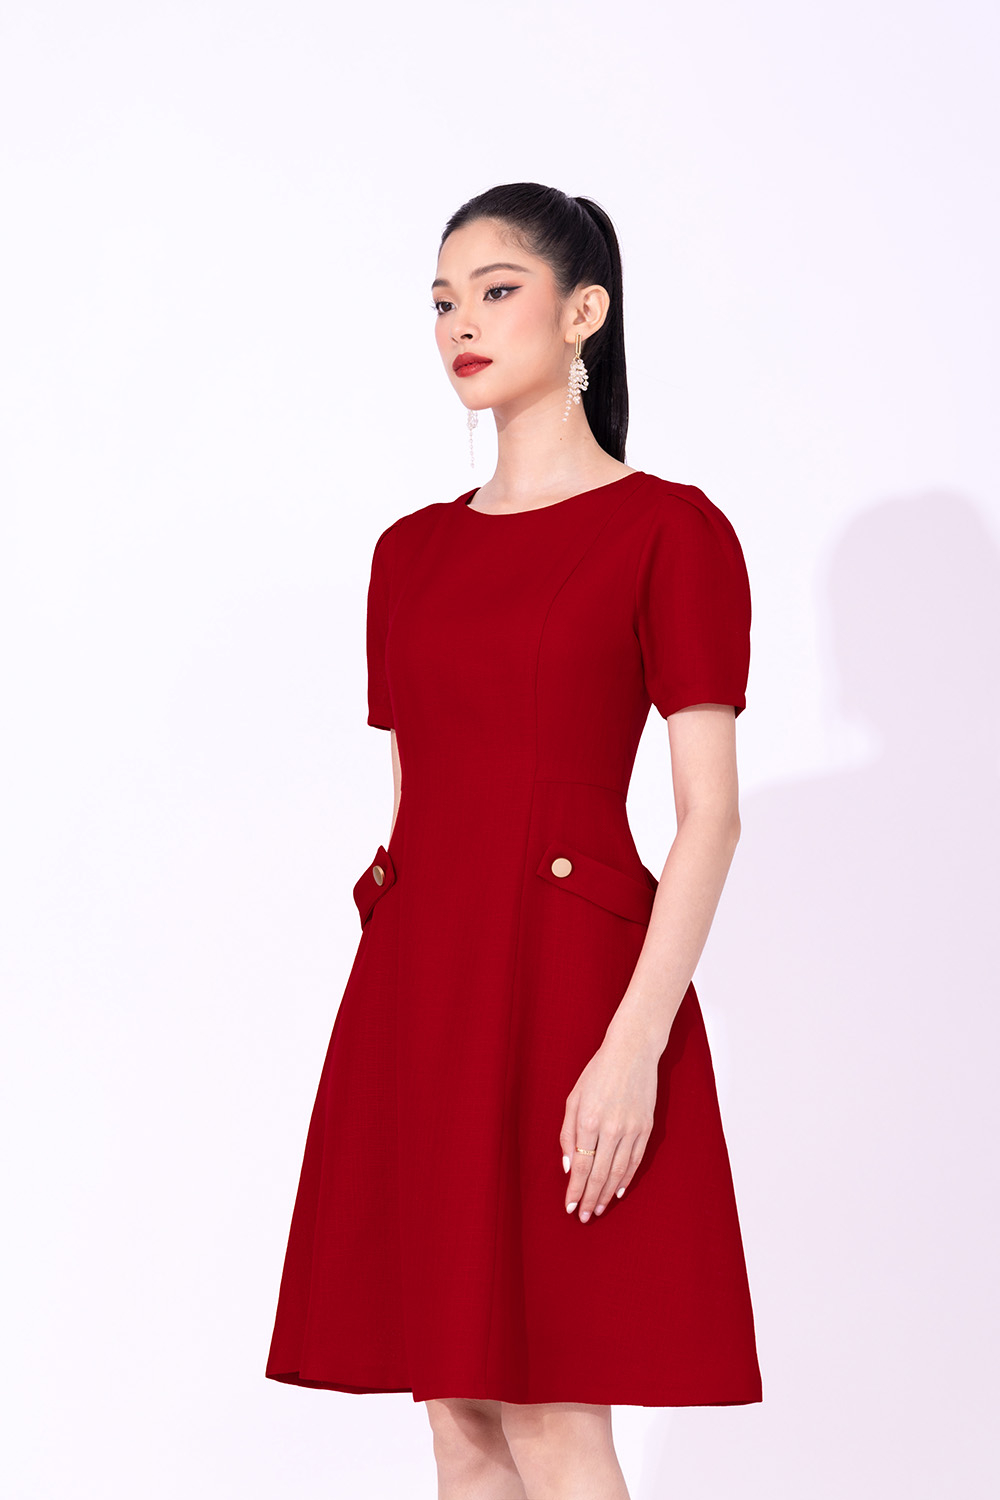 Đầm váy cổ vuông nhúng ngực nút bọc 2 màu (kèm hình thật) | Shopee Việt Nam